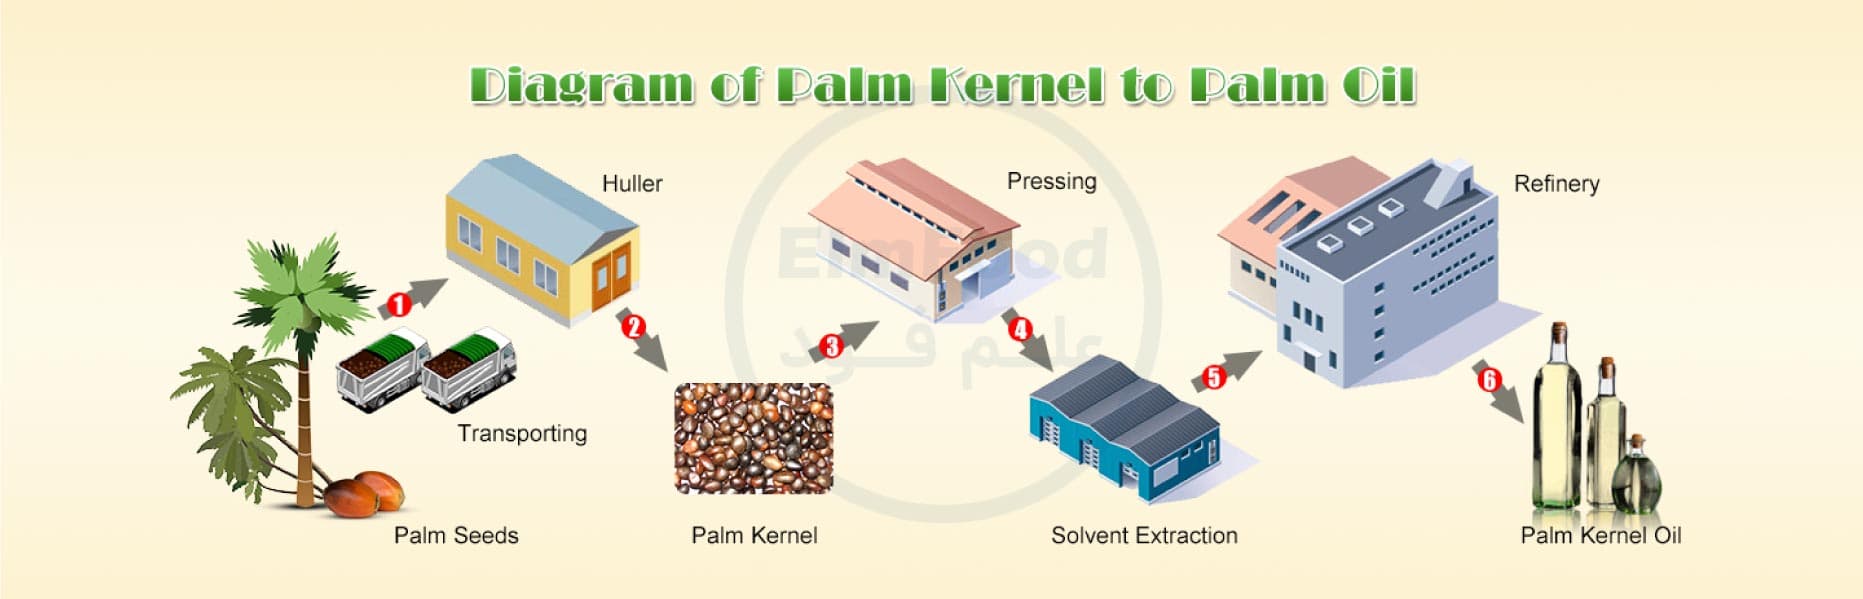 مراحل تولید روغن پالم